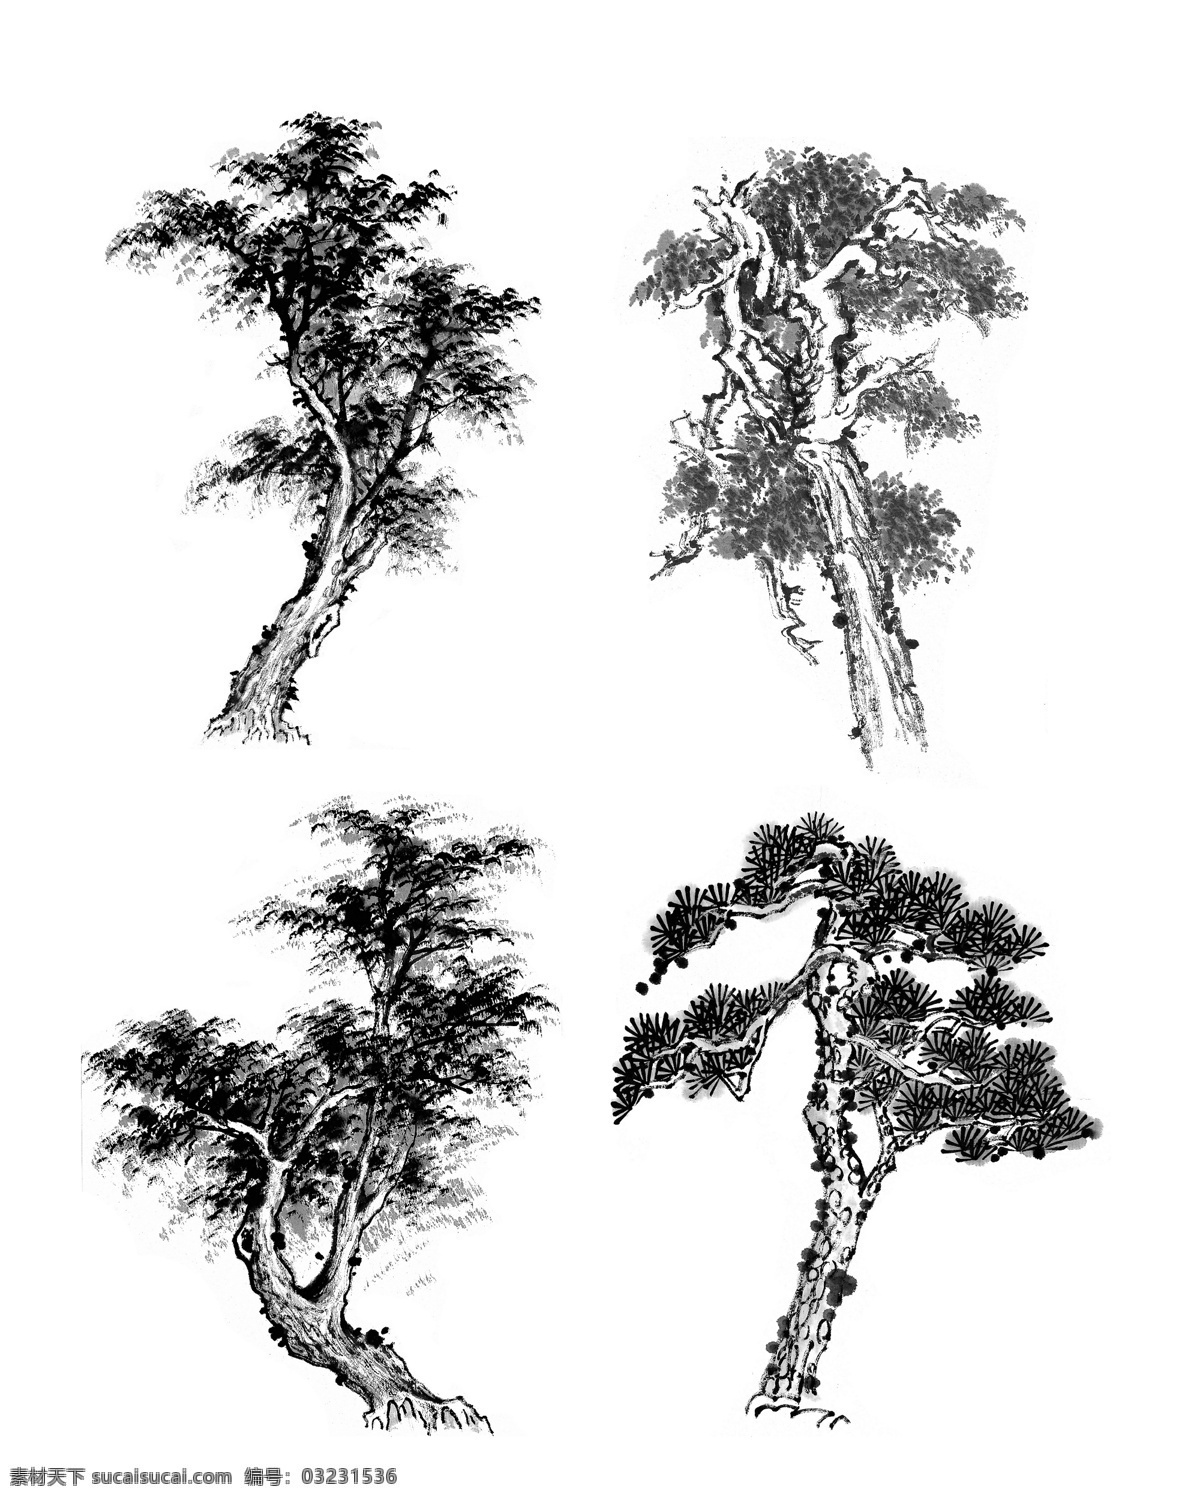 水墨树 水墨 树 文化 古典素材 中国风 水墨苍松 水墨松树 水墨素材 分层